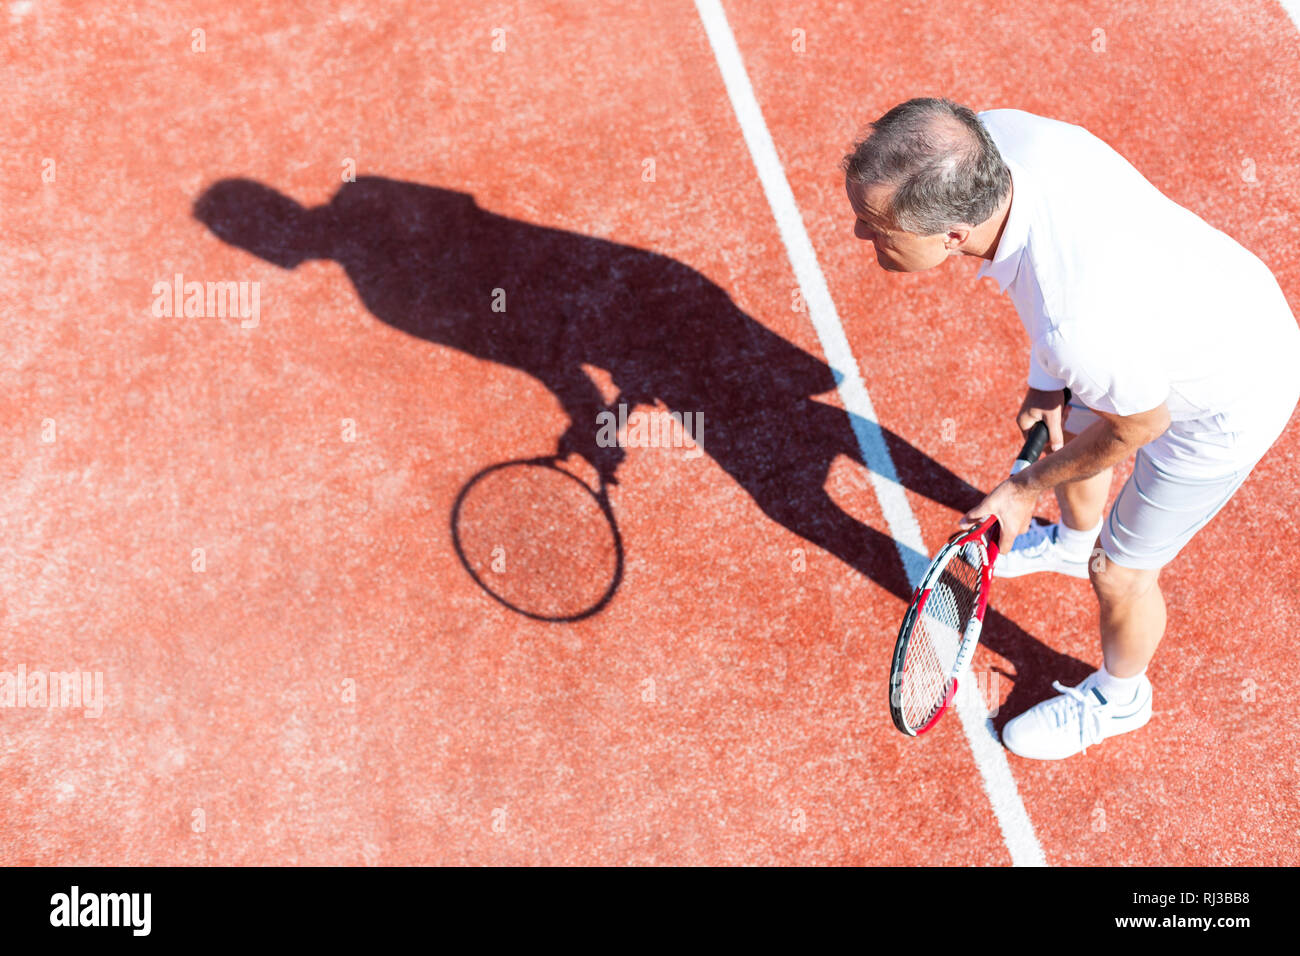 Toute la longueur de senior tennis sur red court week-end en été Banque D'Images